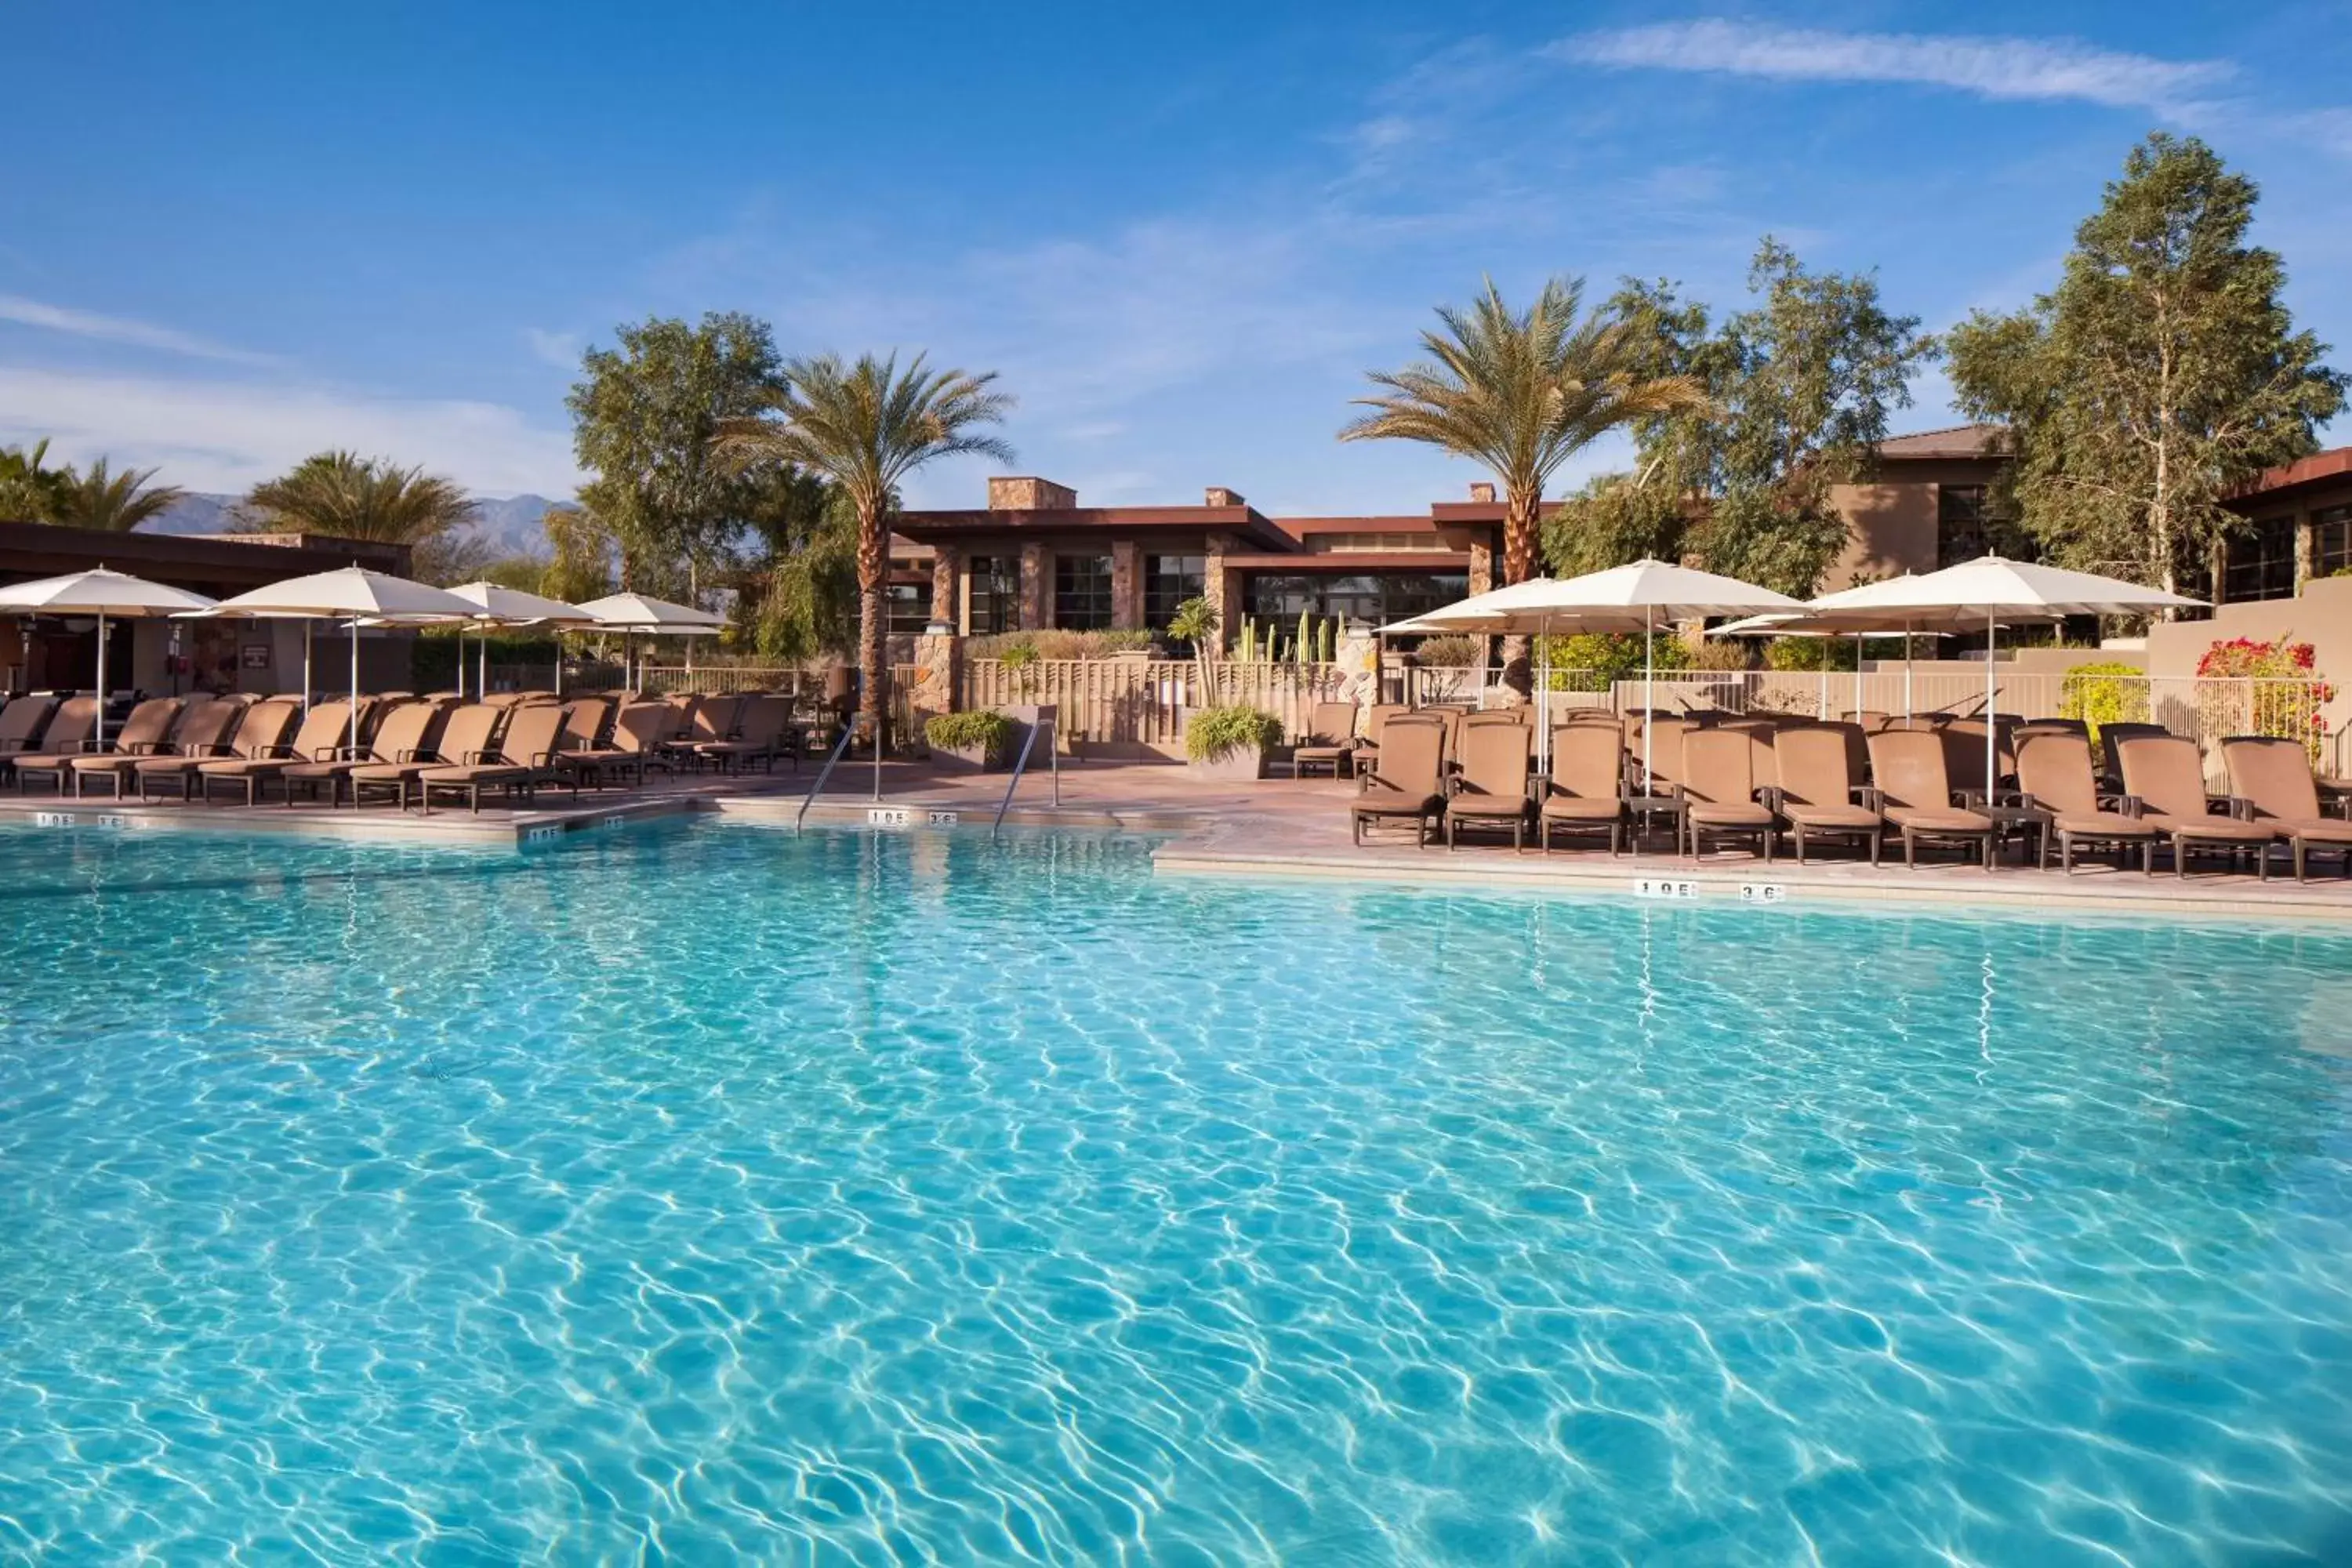 Swimming Pool in The Westin Desert Willow Villas, Palm Desert